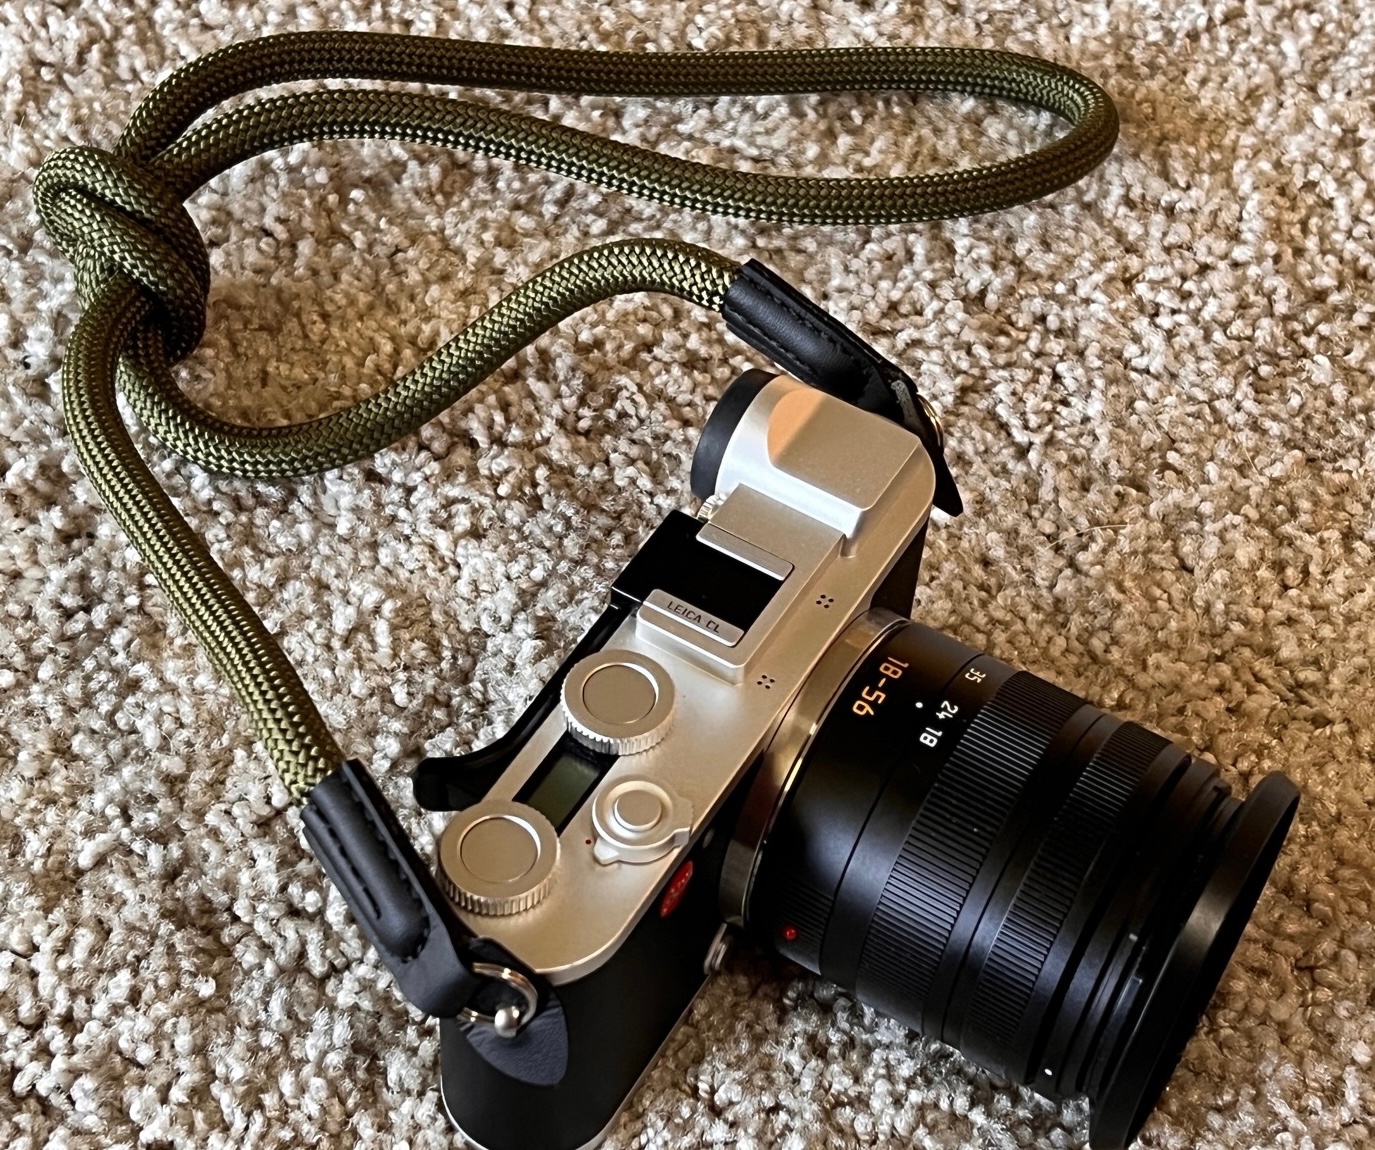 Peak Design anchor alternatives? - Leica M11 - Leica Forum